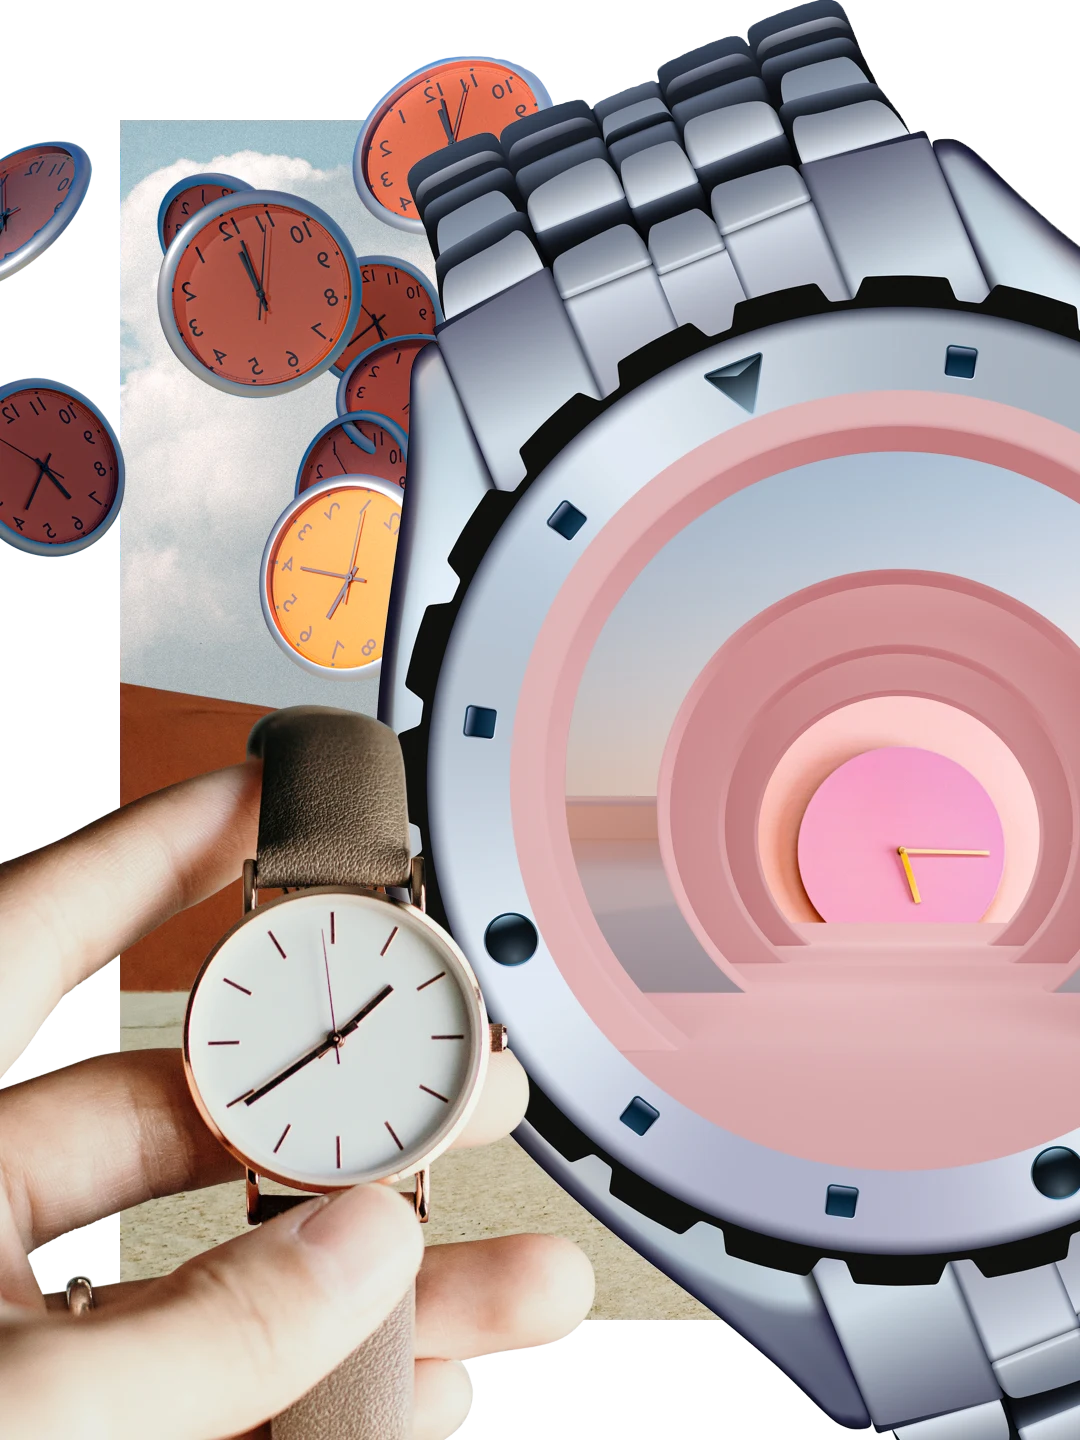 さまざまな時計と腕時計のコラージュ。レザー製腕時計を持っている白い肌の手。画像中央に、金属製の大きな腕時計。黄色い針を備えたピンク色の時計。ブラウンやゴールドのたくさんの時計が雲を背景に宙に浮いている様子。
